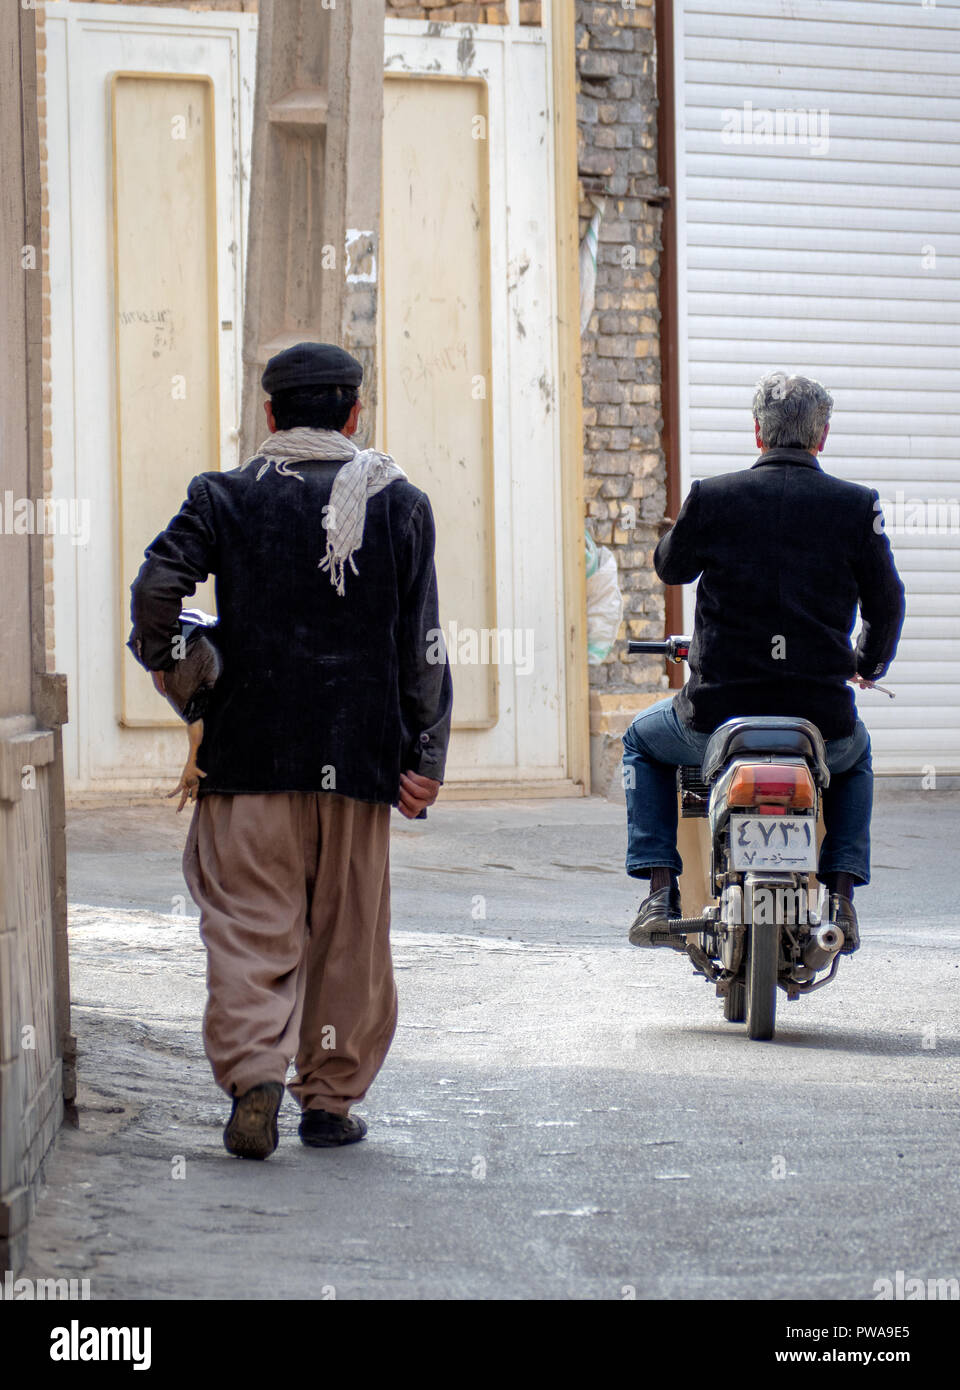 Yazd, Iran - Marzo 7, 2017 : scena quotidiana in uno stretto vicolo della Città Vecchia. Uomo in sella a una motocicletta. Uomo con un pollo Foto Stock